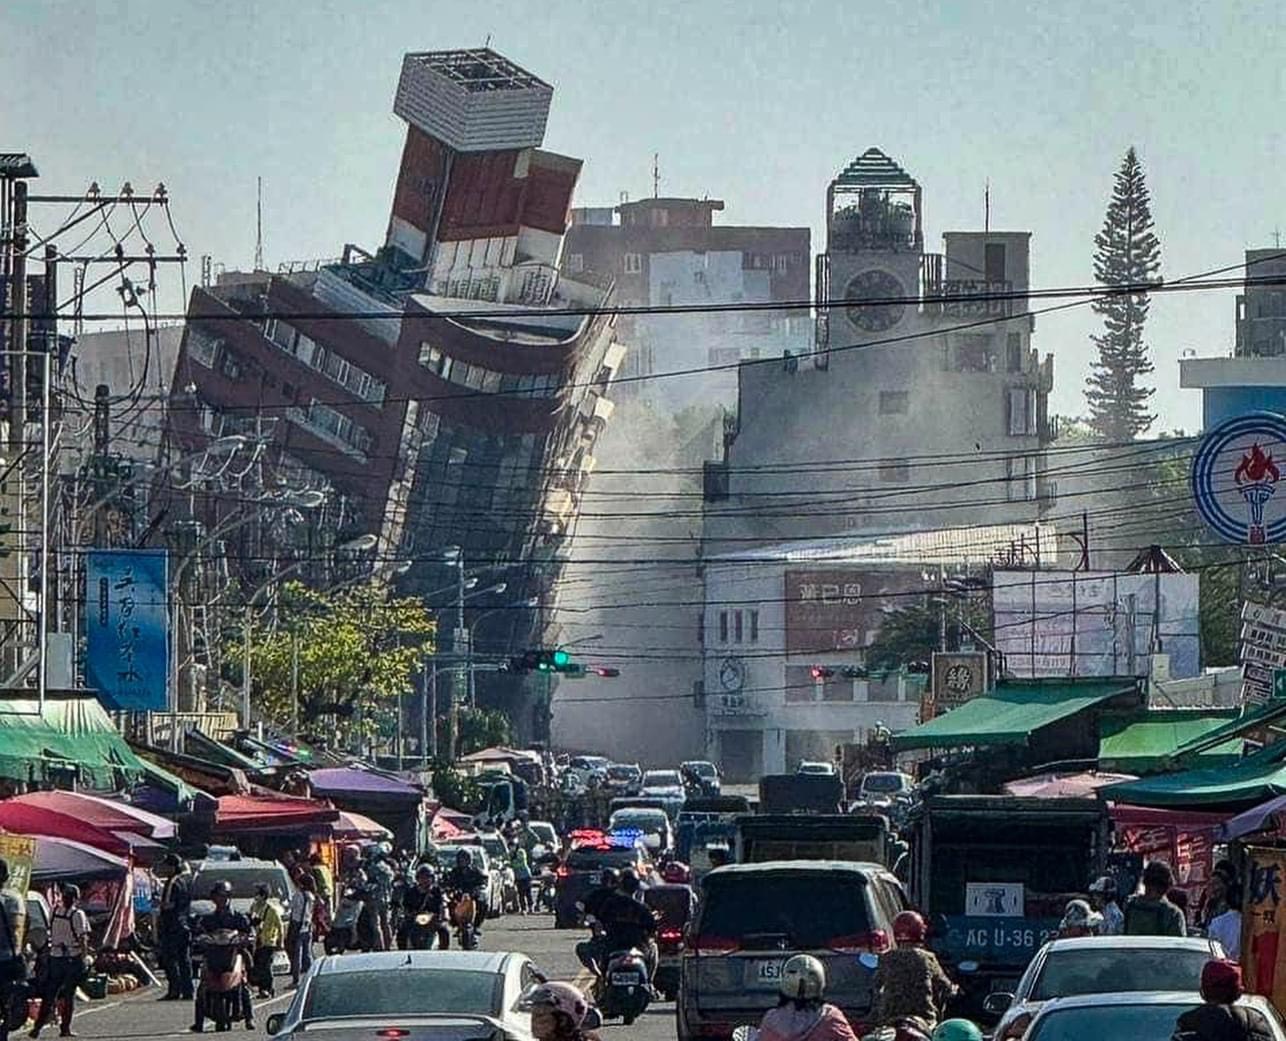 Trận động đất 7,2 độ Richter ở Đài Loan trong lời kể chưa hết bàng hoàng của người Việt, nhà cửa rung lắc, chao đảo, đồ đạc rơi loảng xoảng - Ảnh 4.